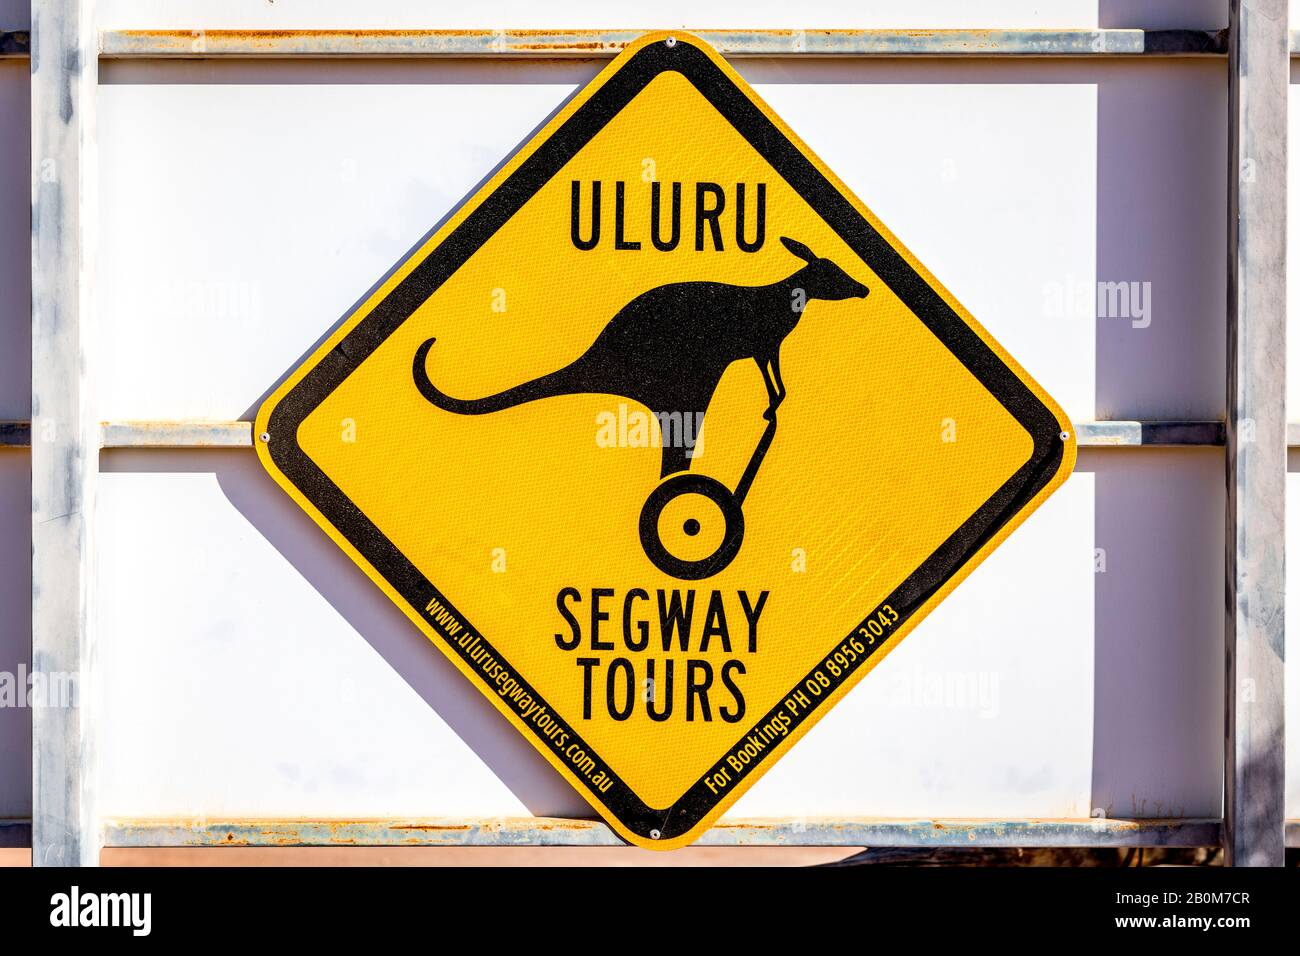 Ein lustiges Zeichen für ein Känguru, das auf einem segway für Touren durch den Uluru segway unterwegs ist, die in Coober Pedy, South Australia, gefunden wurden. Stockfoto